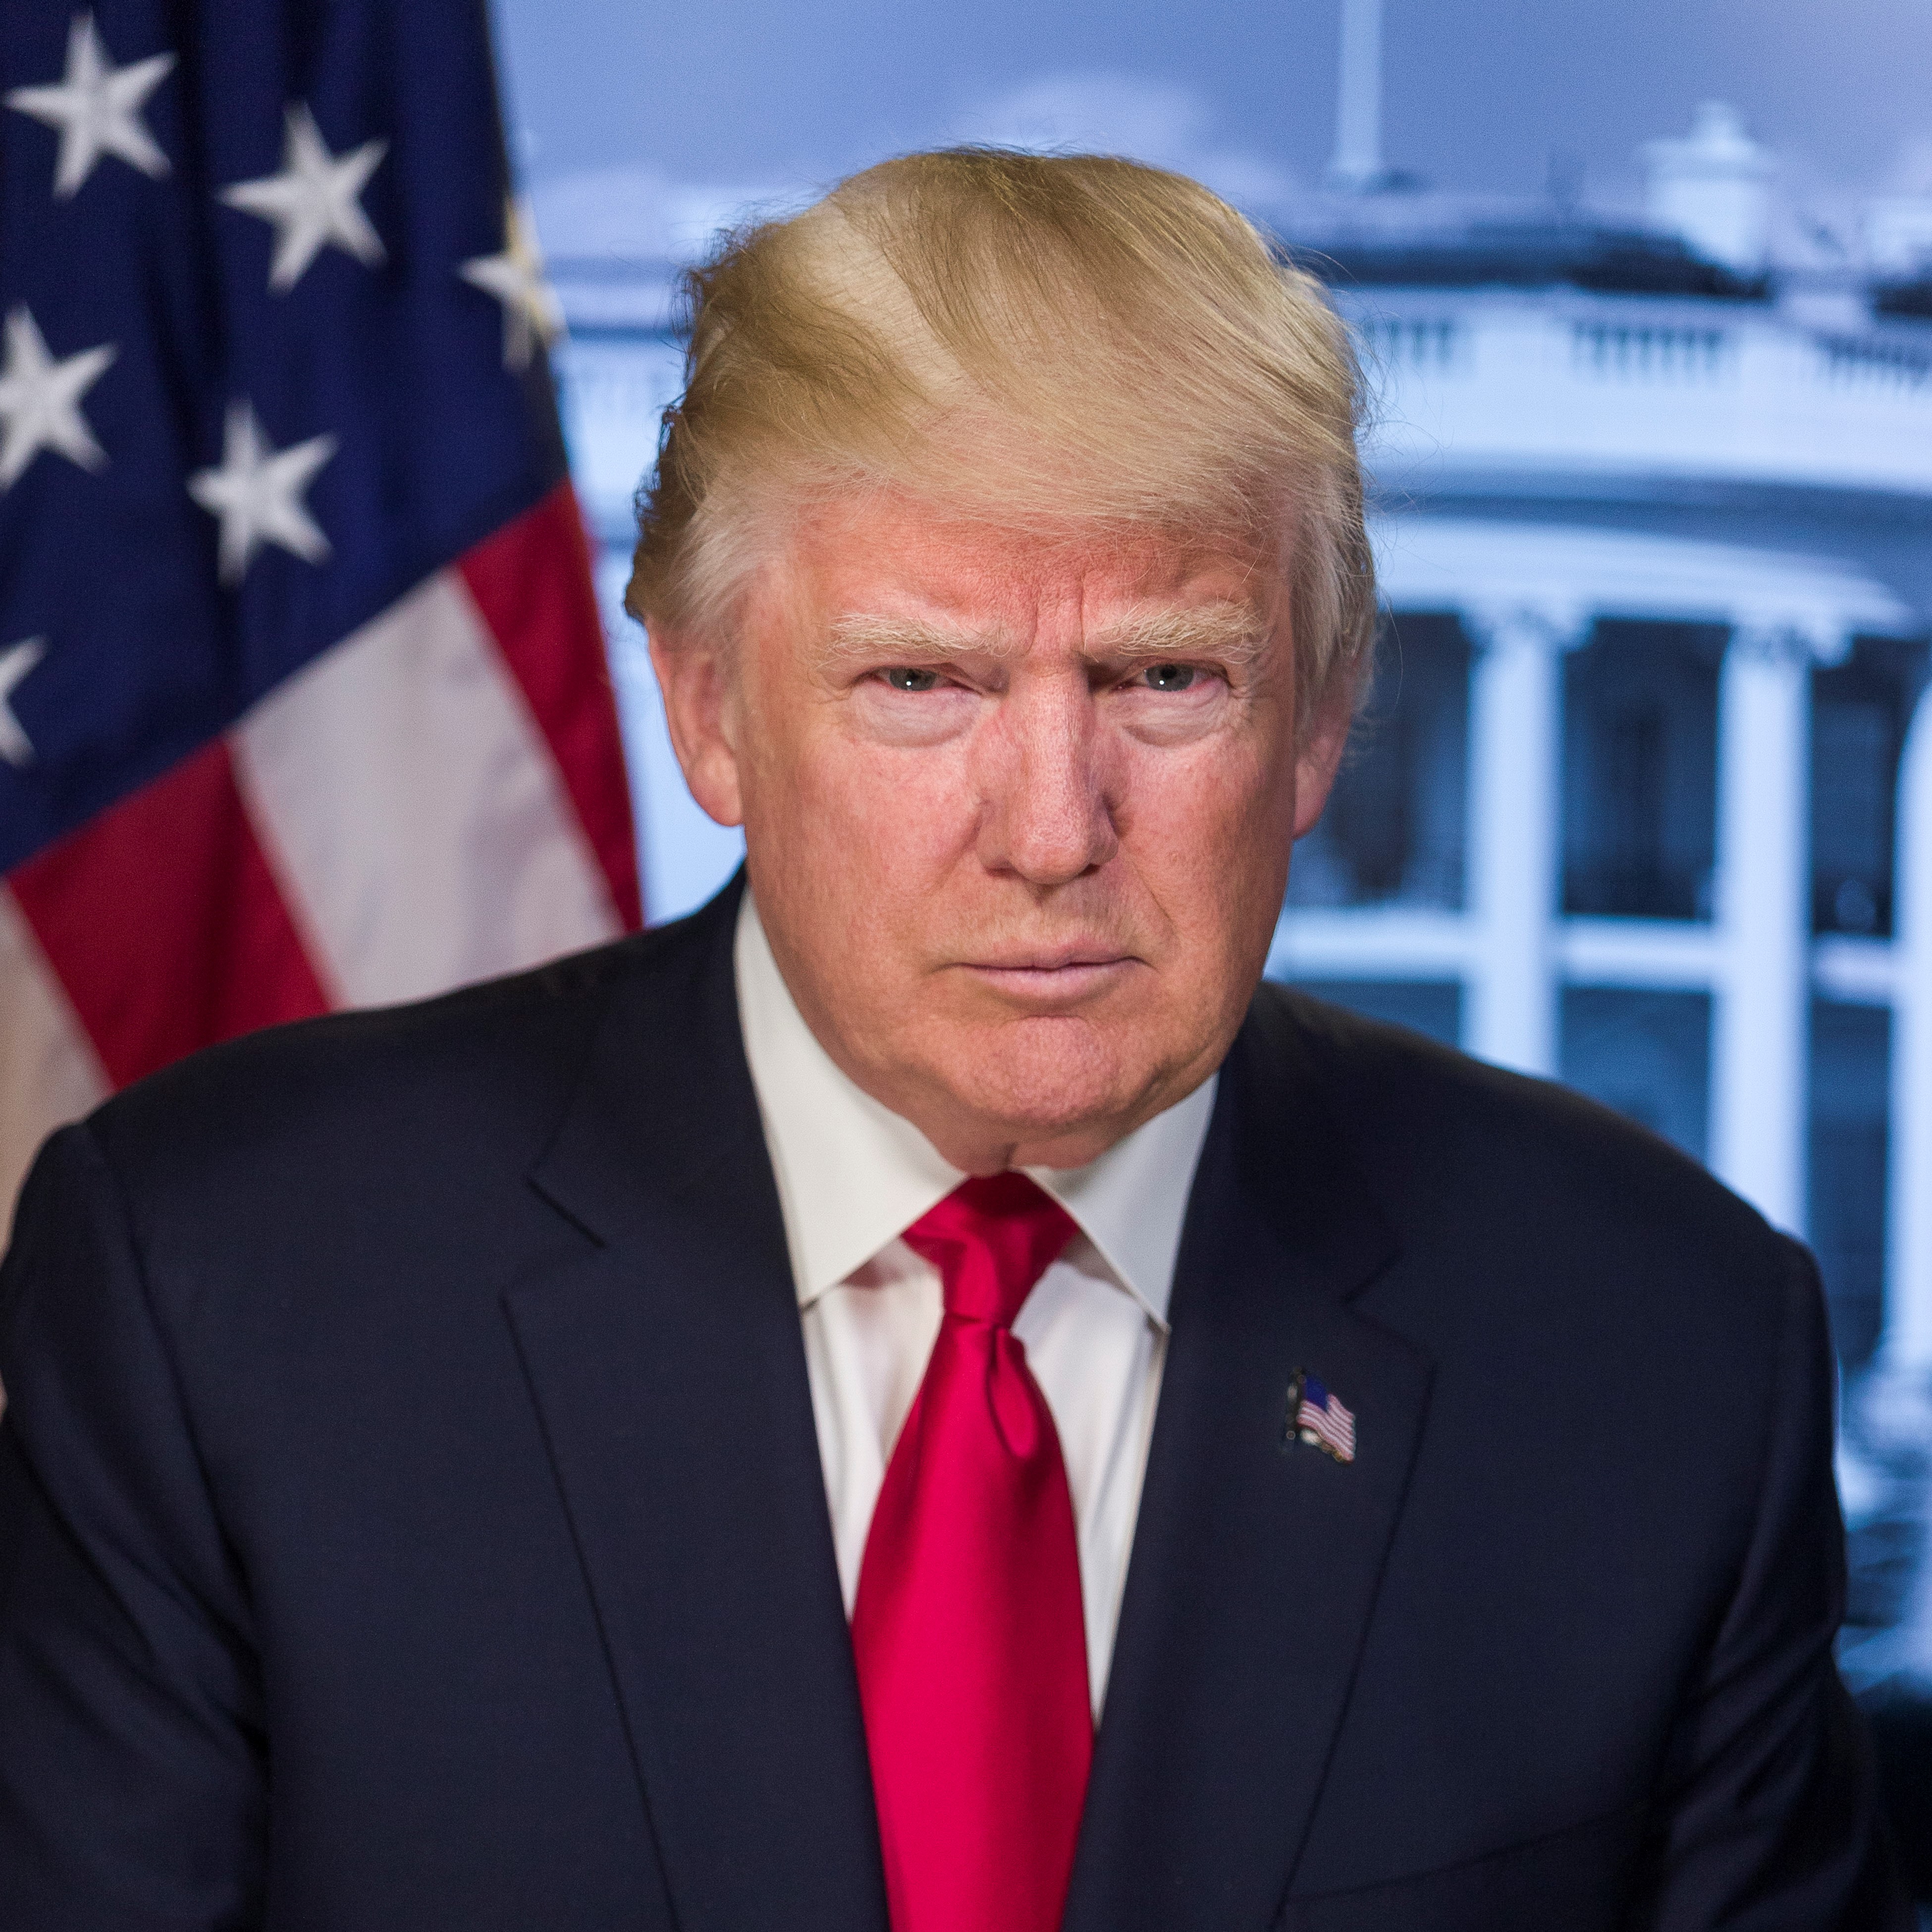 Trump official portrait